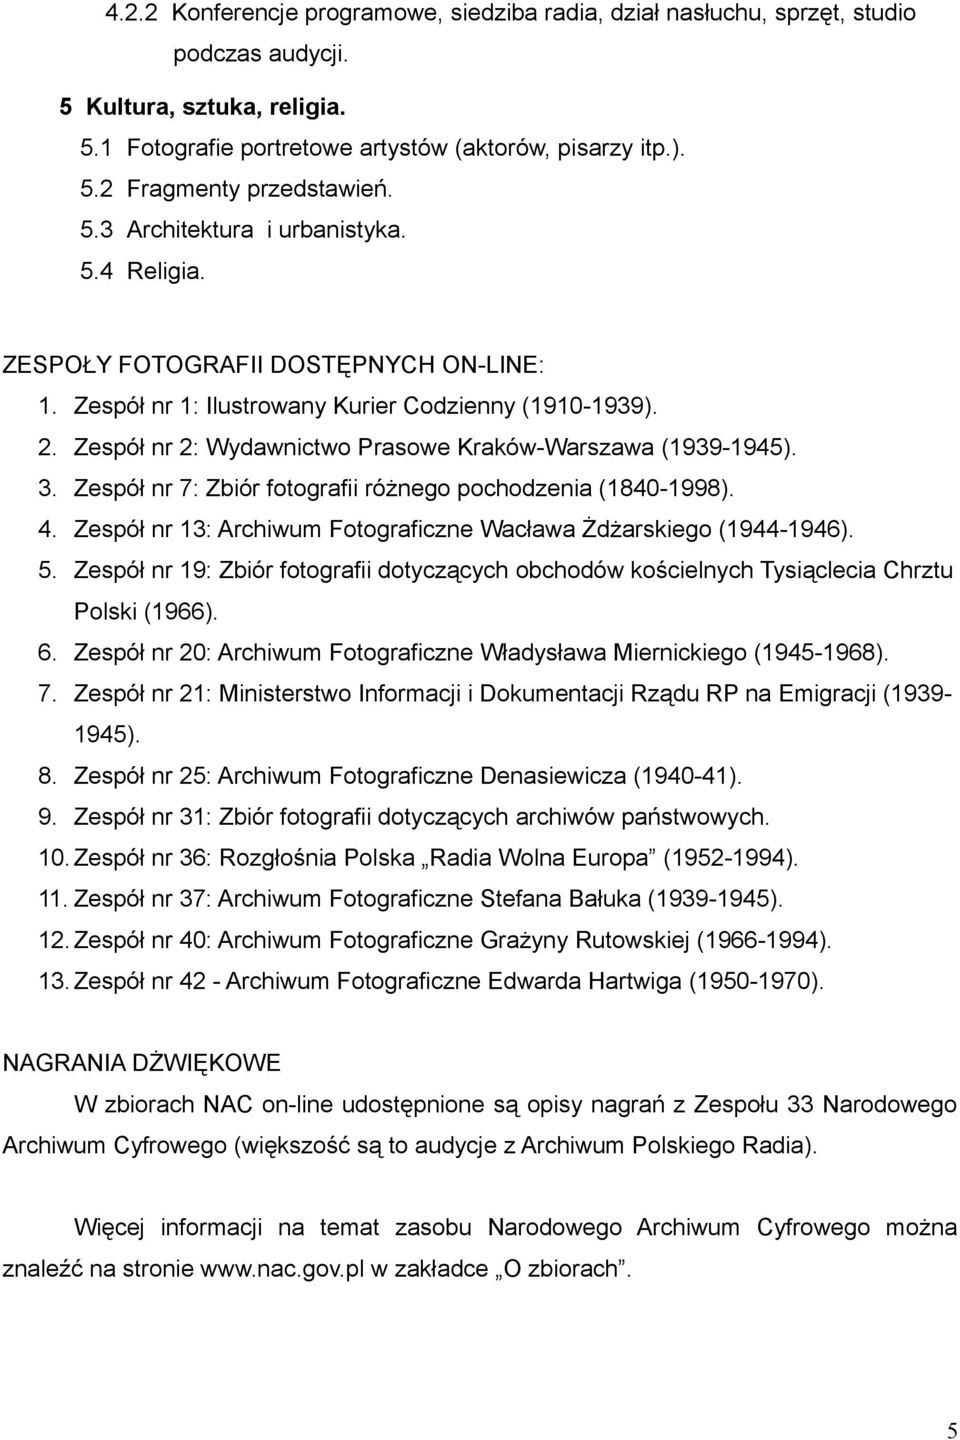 Zespół nr 2: Wydawnictwo Prasowe Kraków-Warszawa (1939-1945). 3. Zespół nr 7: Zbiór fotografii różnego pochodzenia (1840-1998). 4. Zespół nr 13: Archiwum Fotograficzne Wacława Żdżarskiego (1944-1946).